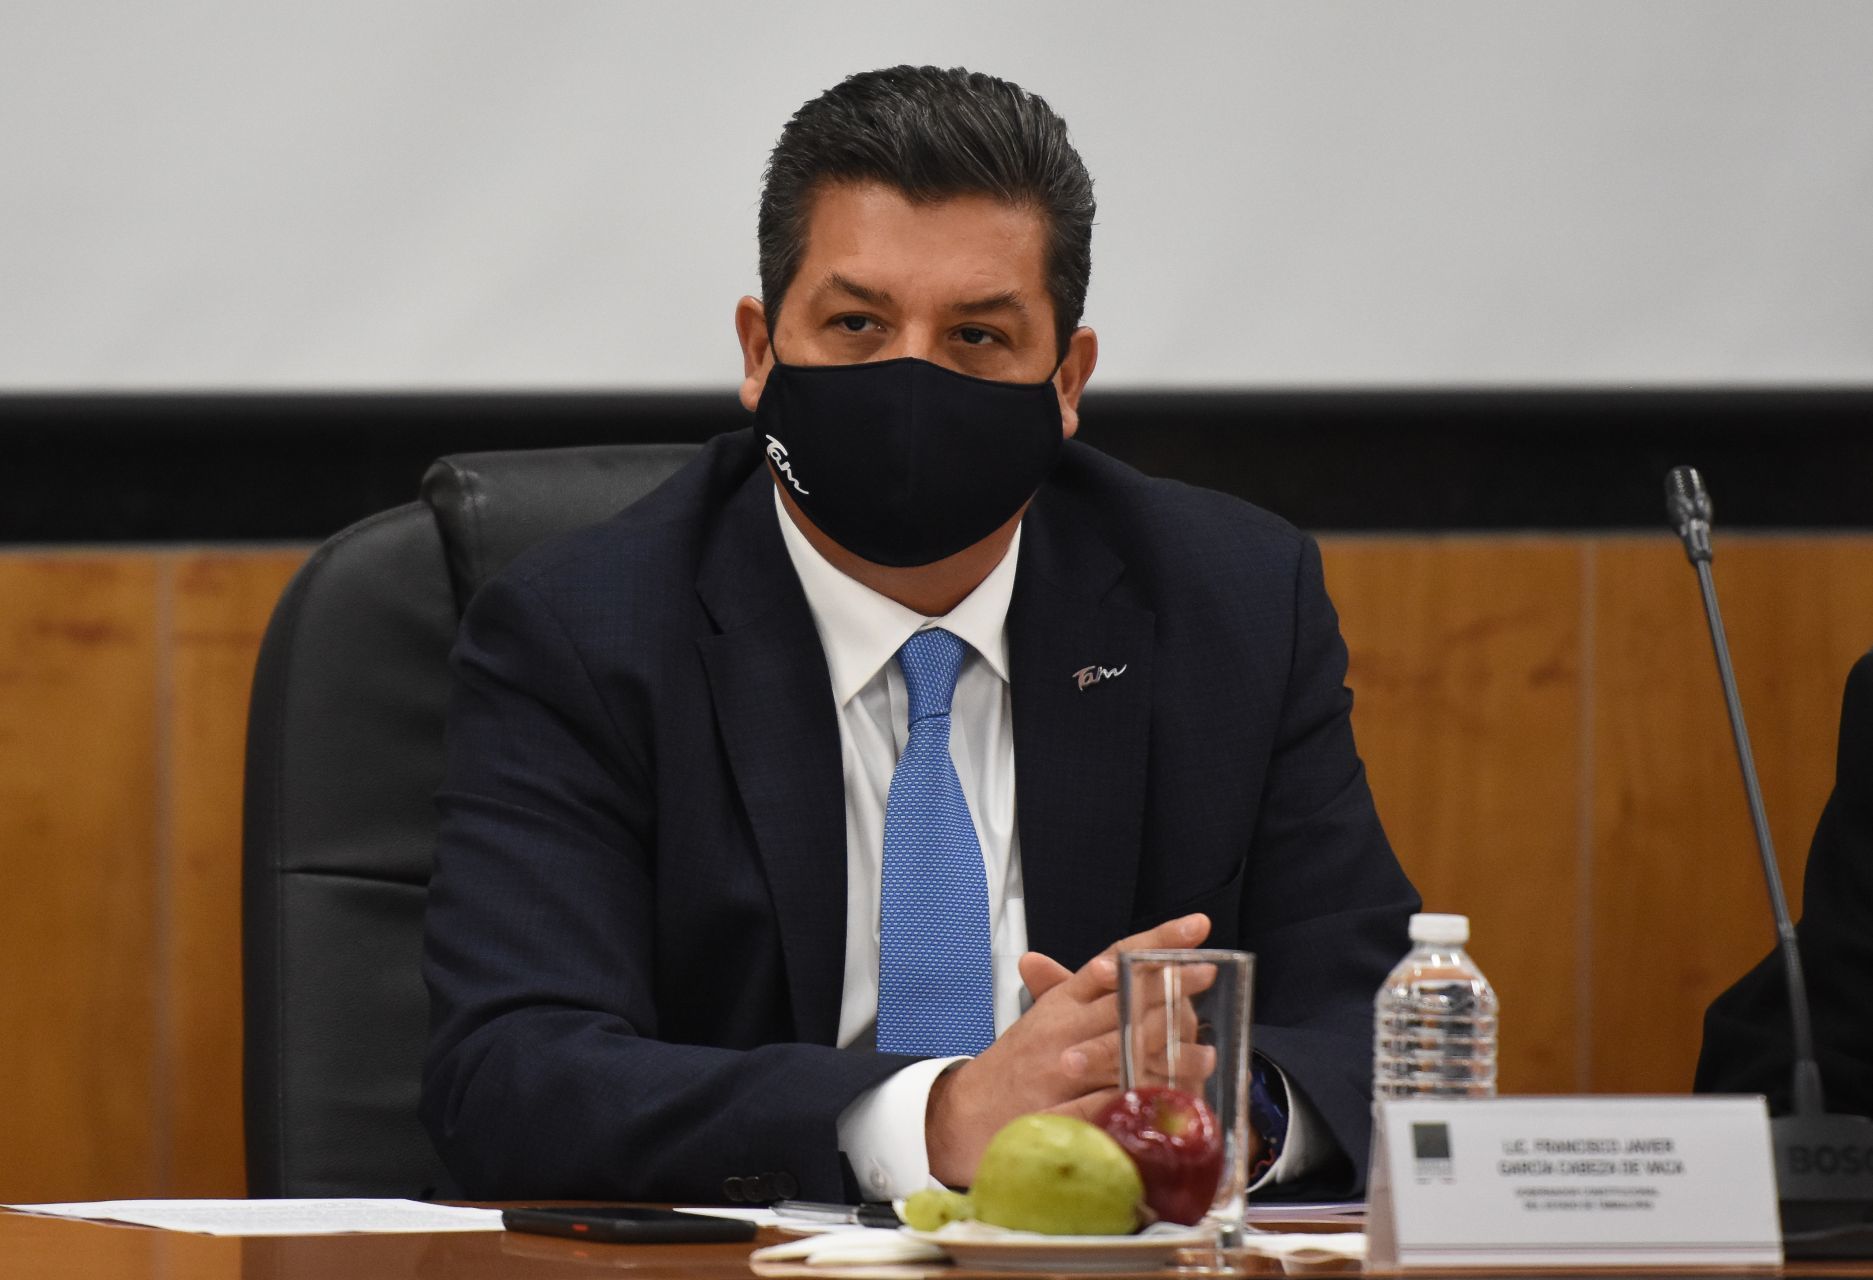 Rechaza Corte suspender "blindaje" a García Cabeza de Vaca en Tamaulipas